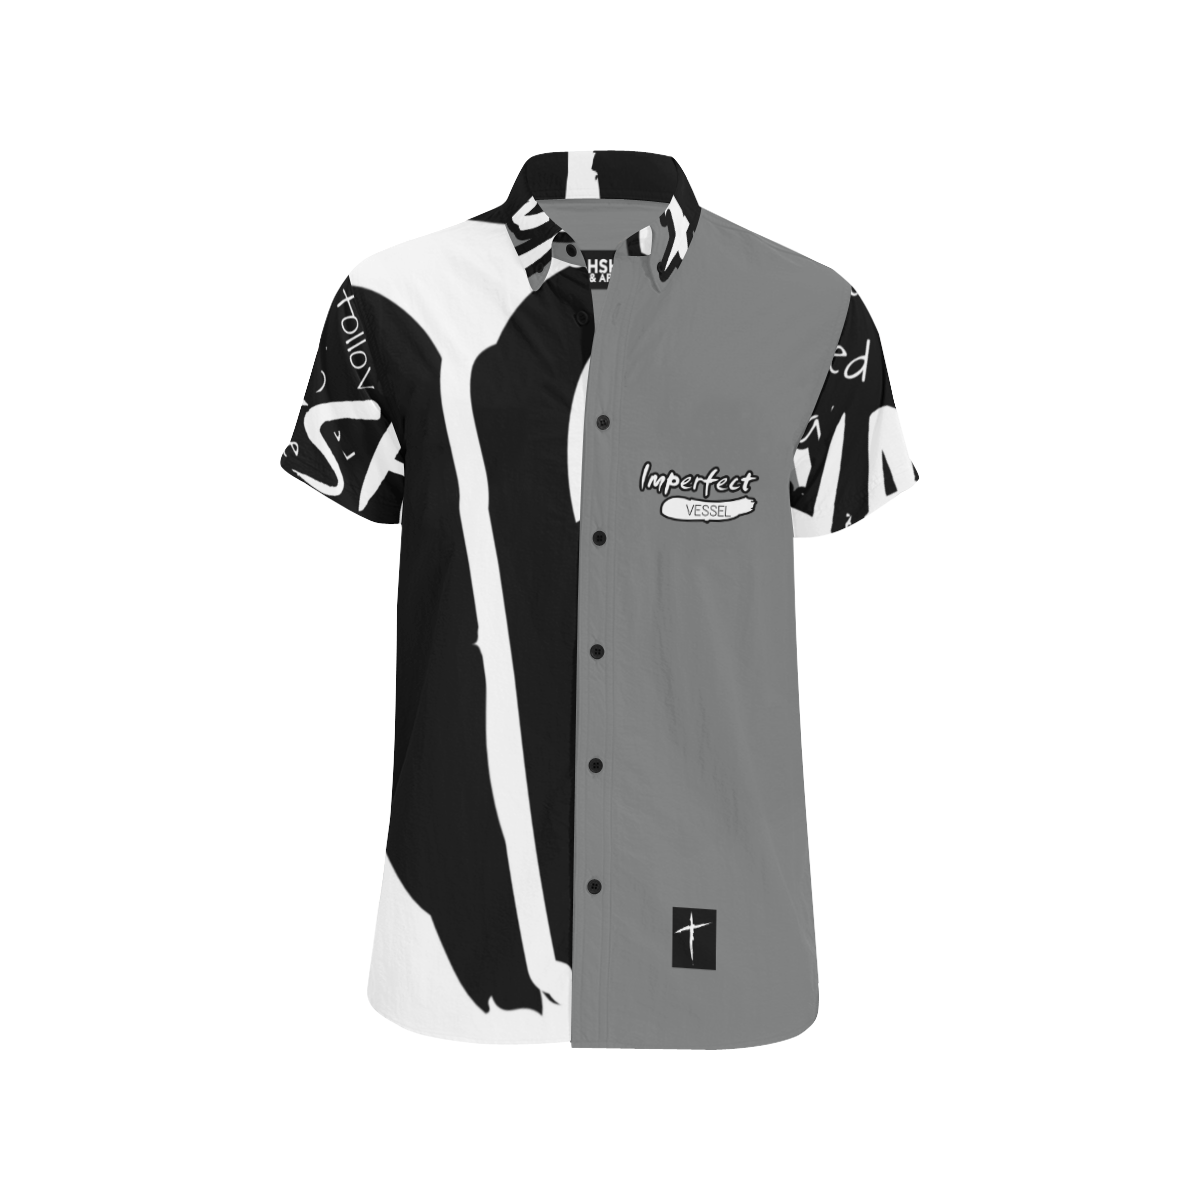 Gray 1 Men's All Over Print Short Sleeve Shirt (Model T53)